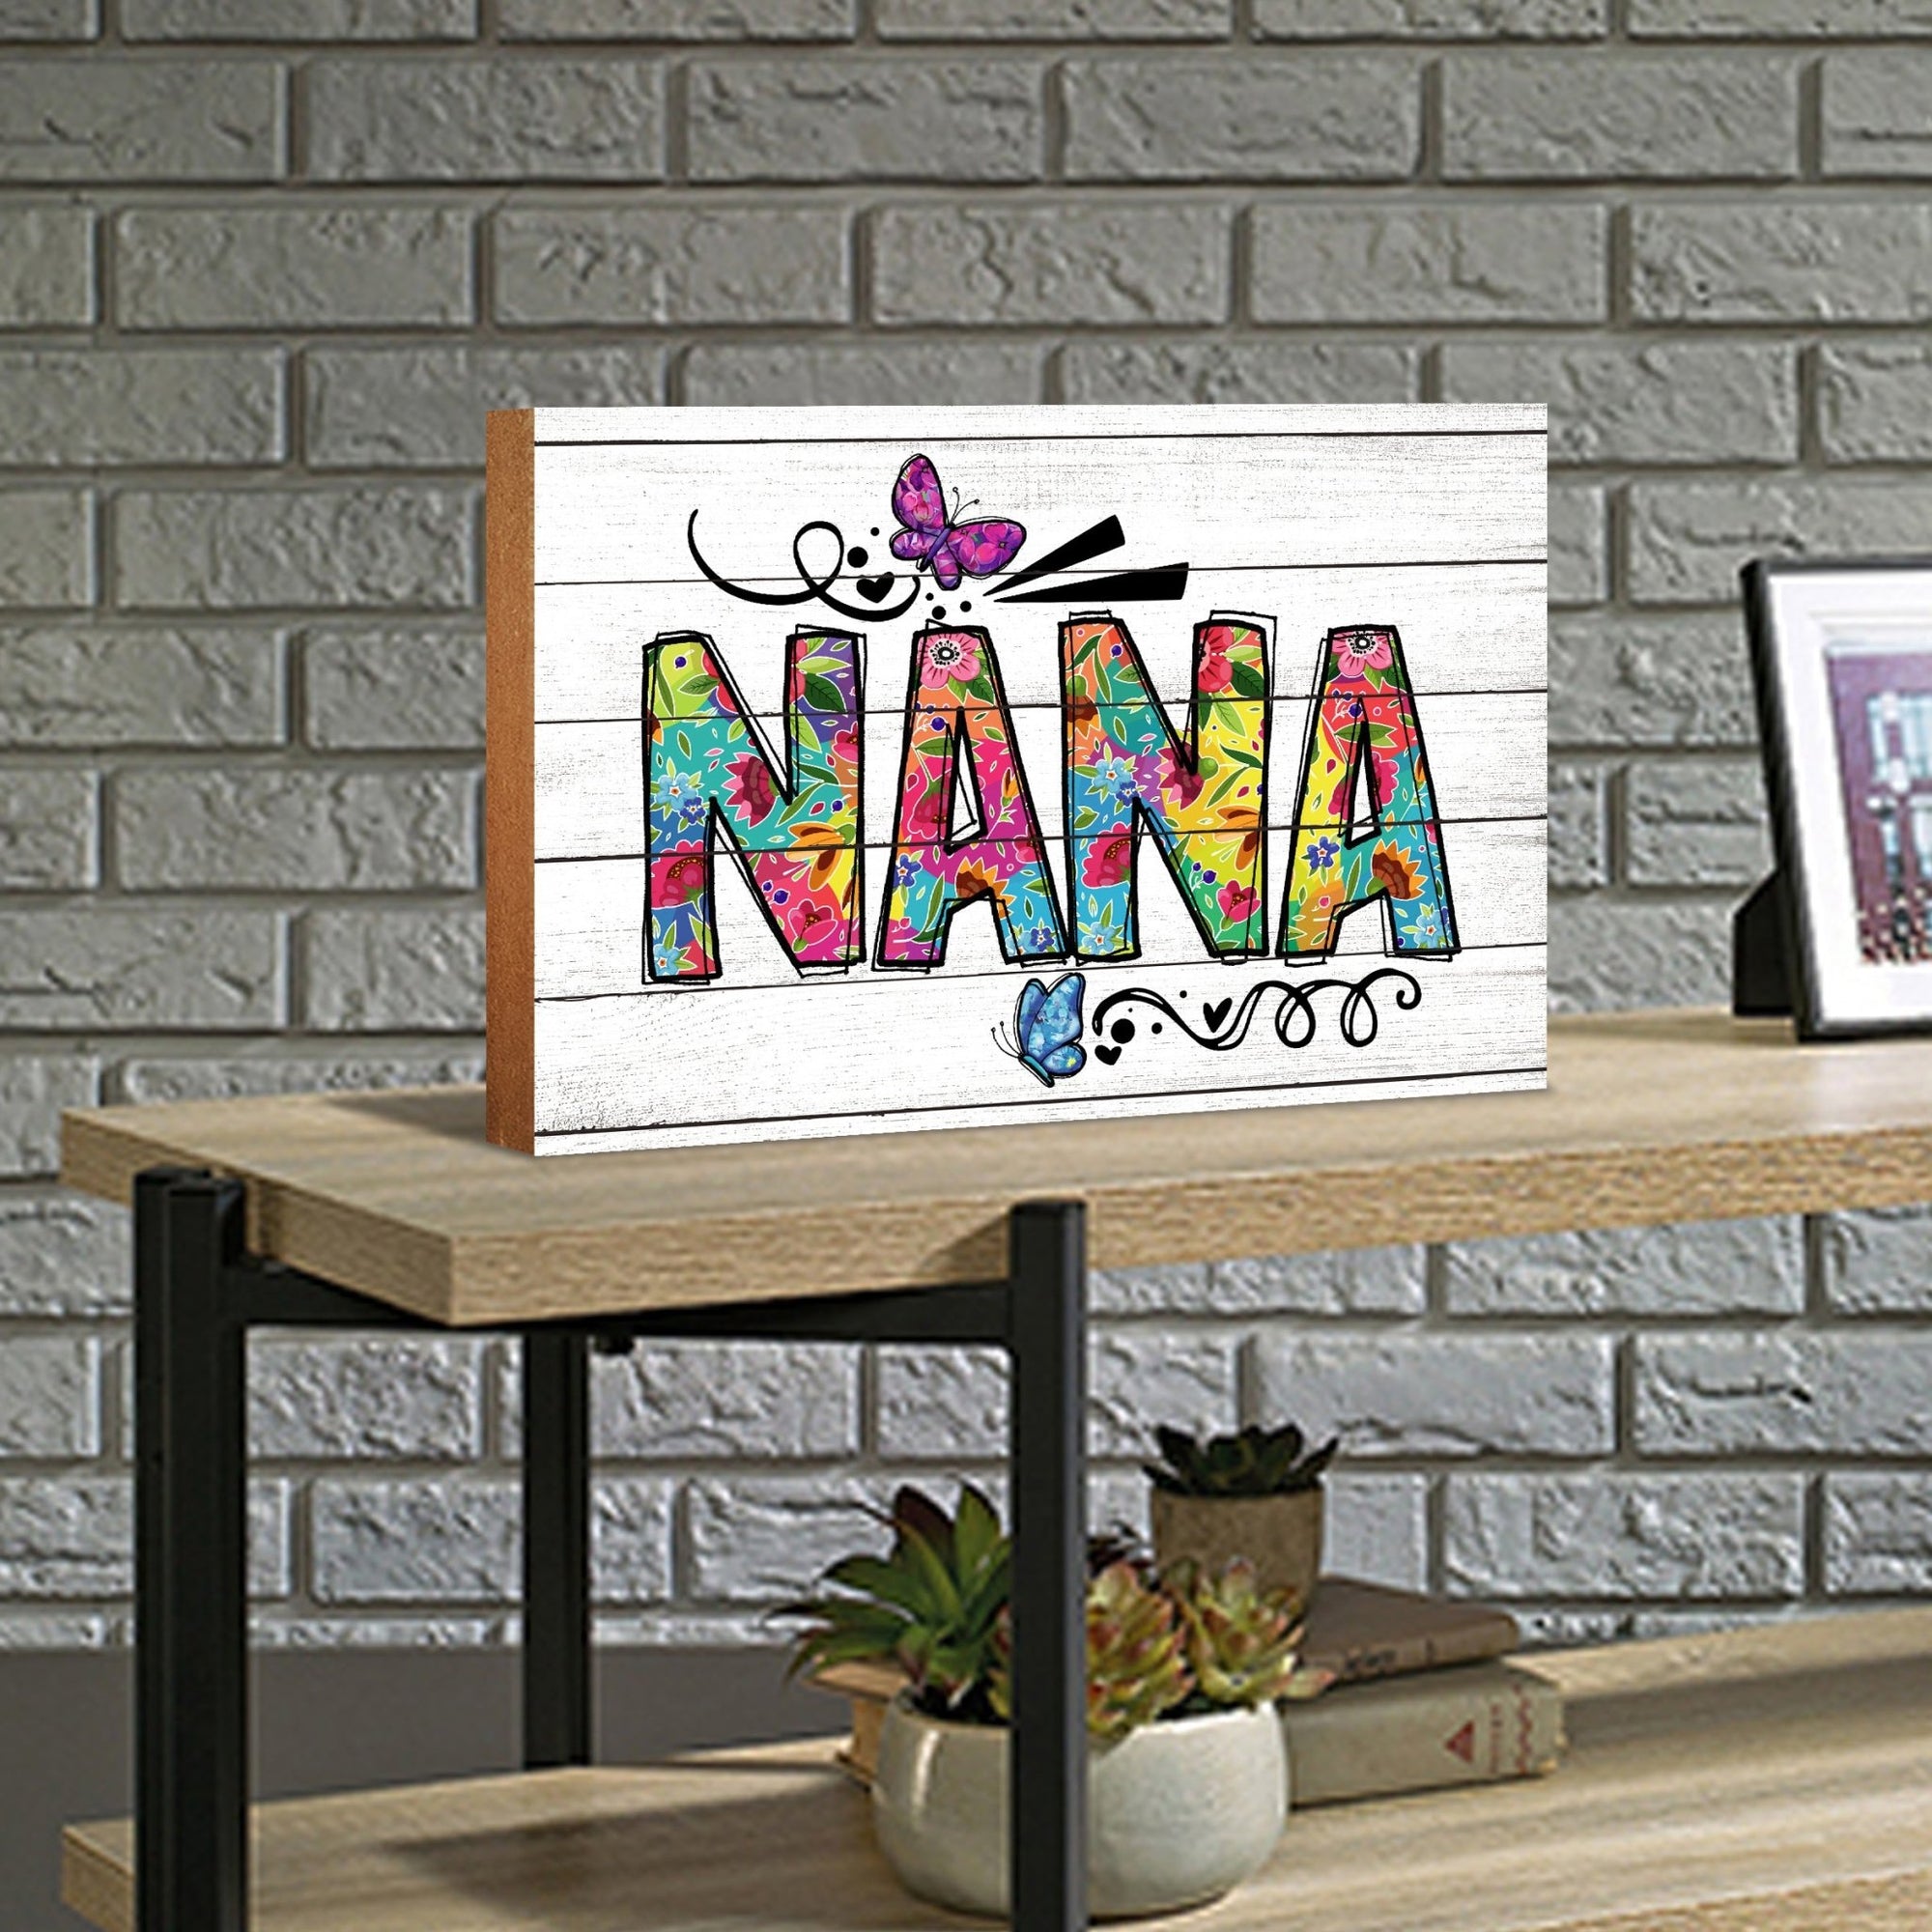 Modern-Inspired White Wooden Graffiti Art Shelf Sitter Gift Idea & Home Décor - Nana - LifeSong Milestones